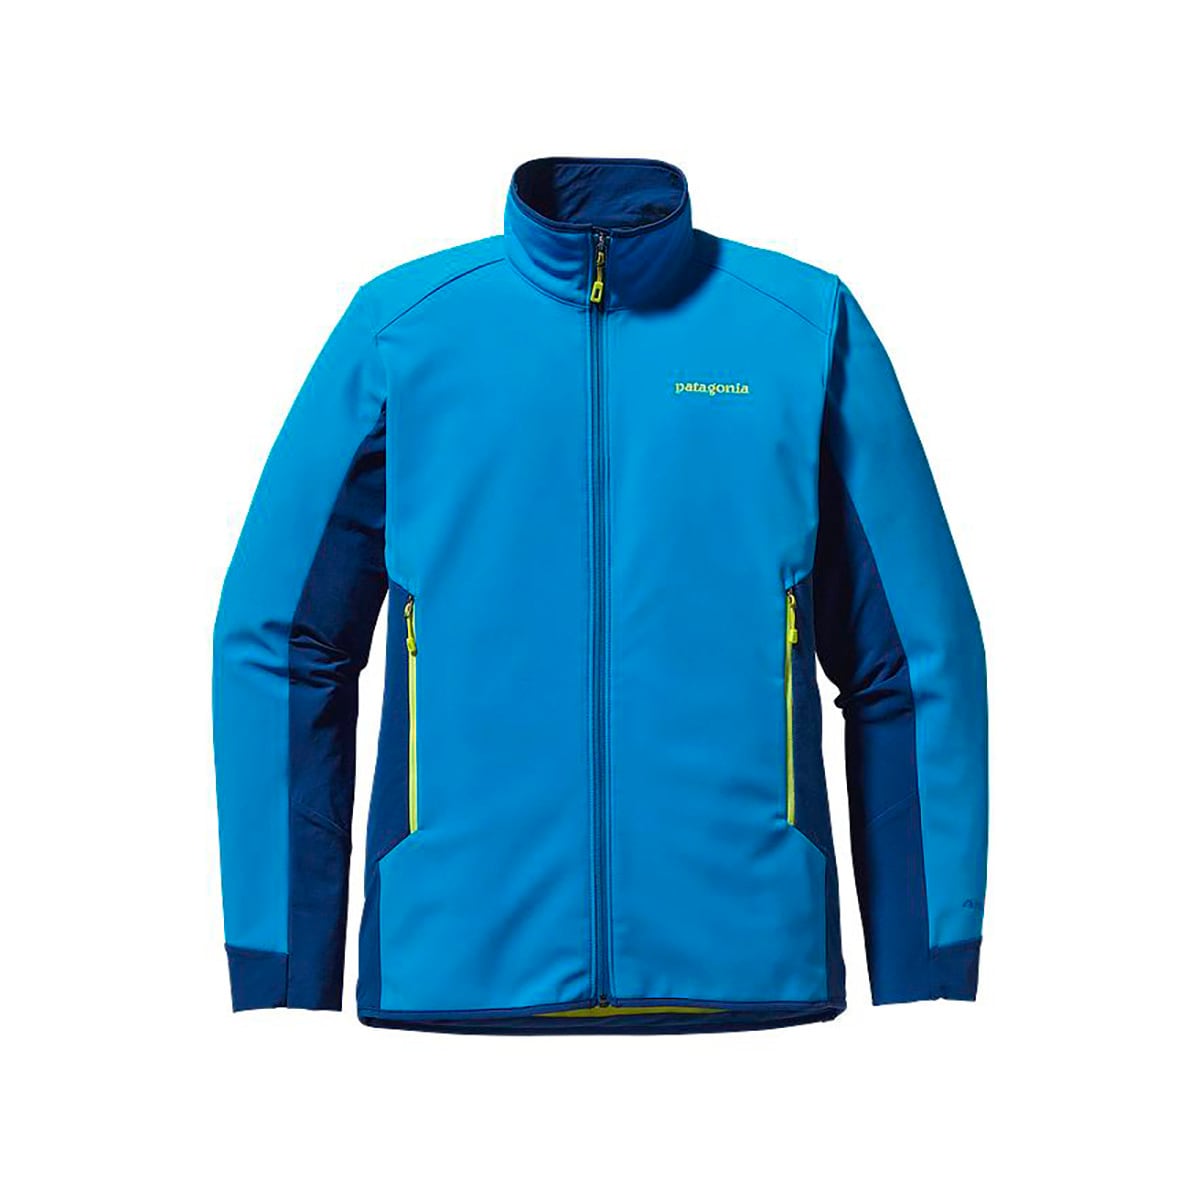 Patagonia Adze Hybrid Softshell Jacket - Men's - Clothing